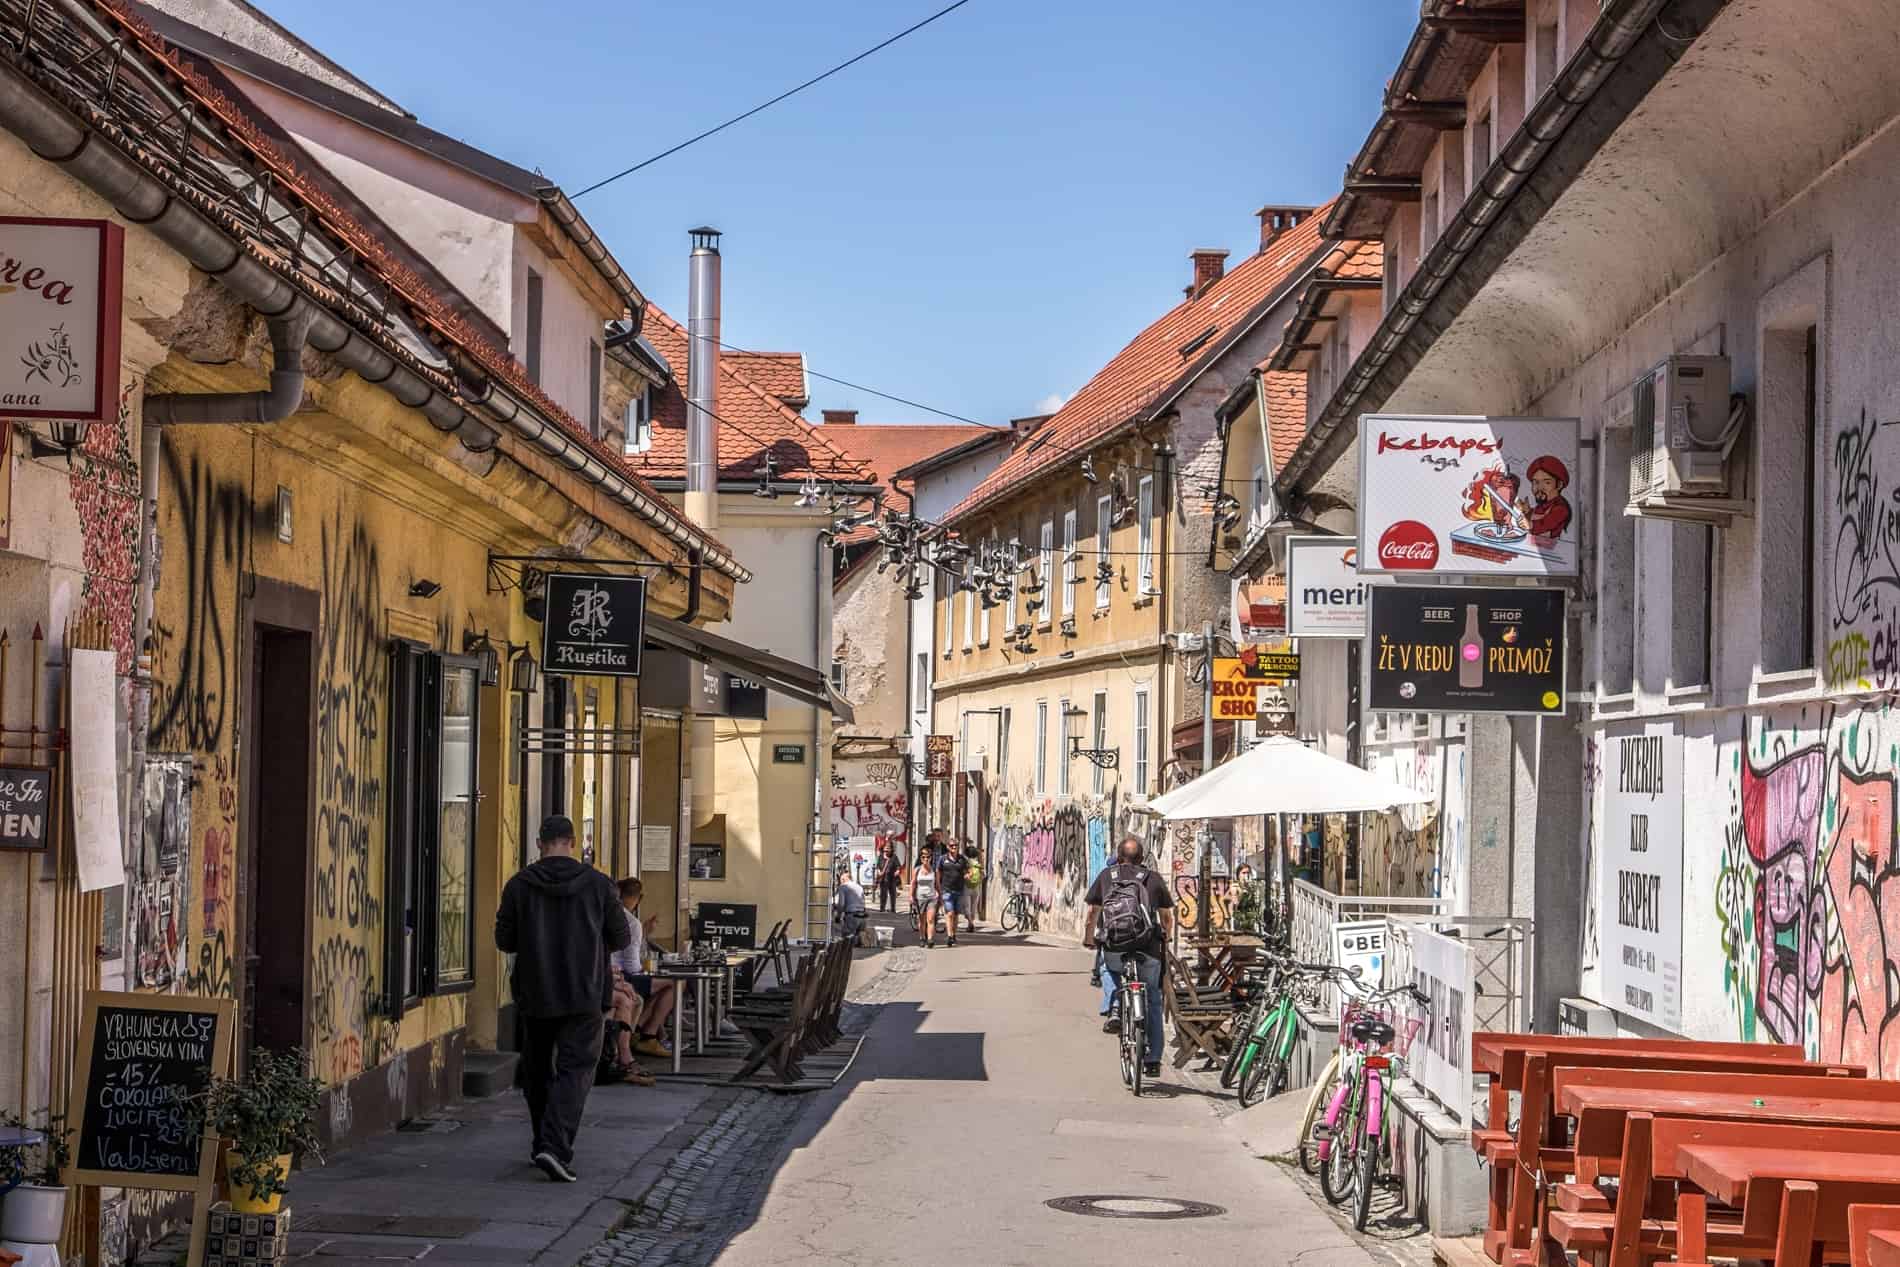 A narrow, gritty street in Ljubljana full of graffiti, street art murals, and unkempt buildings. 